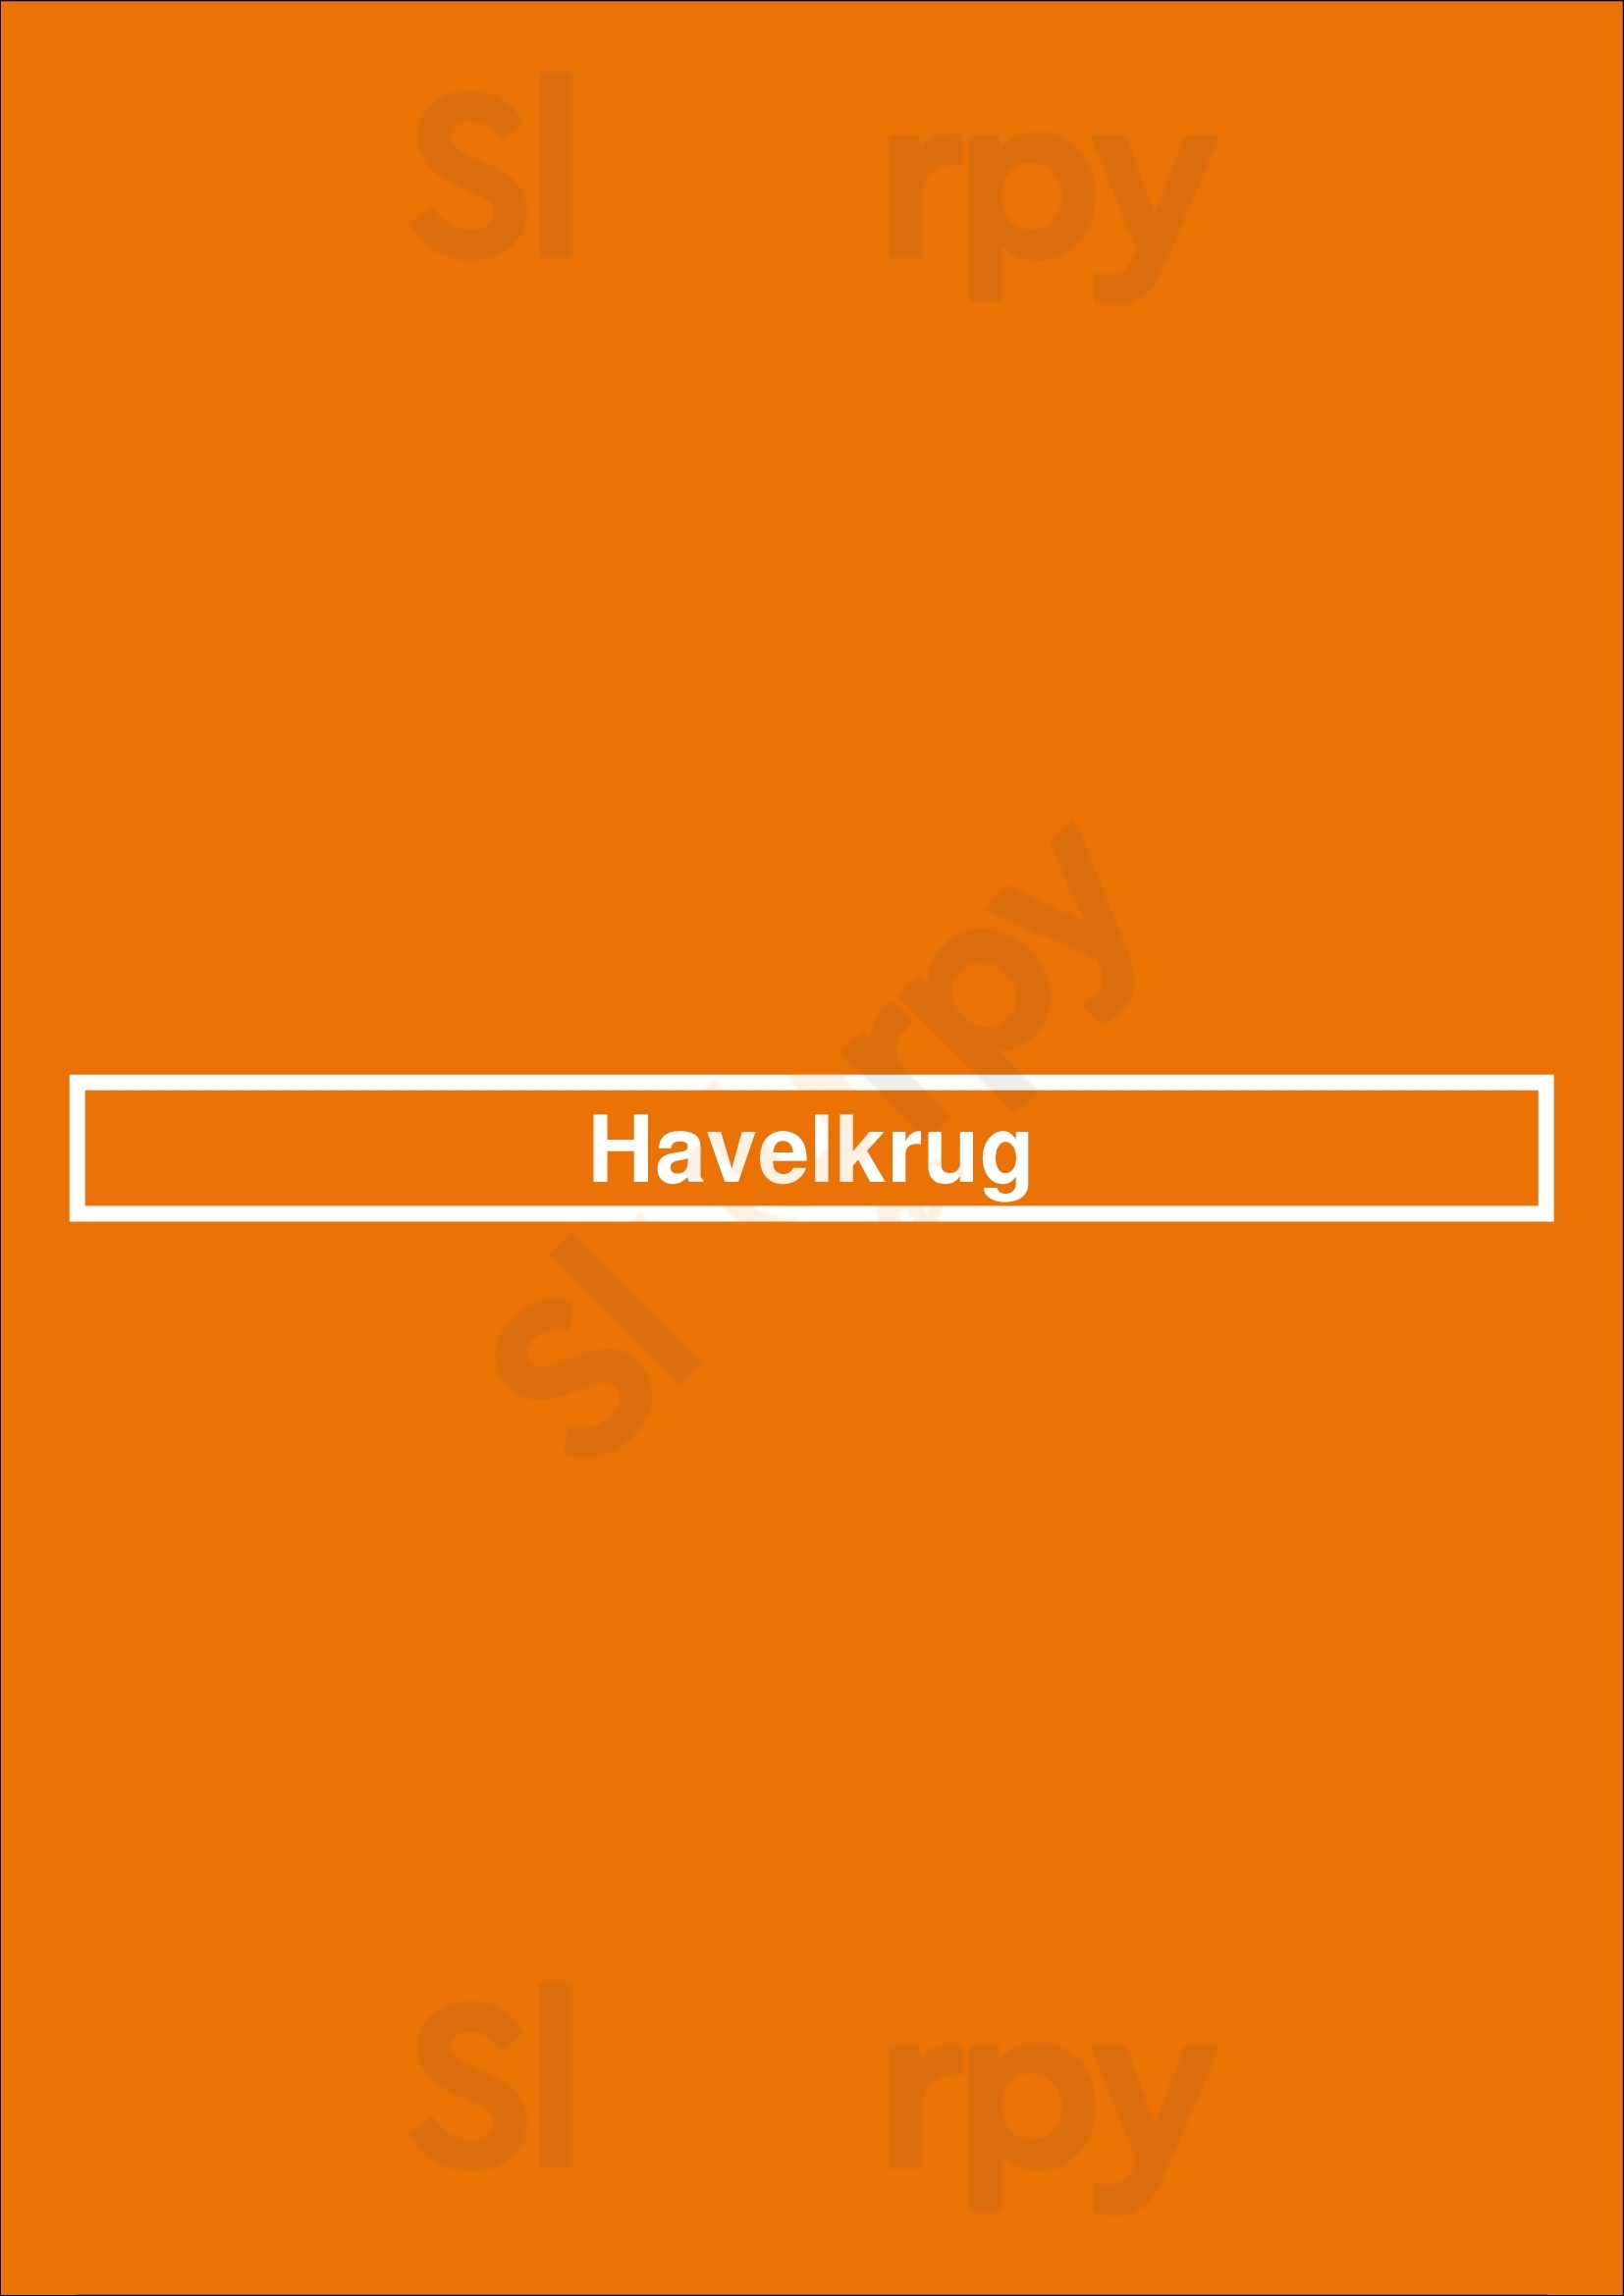 Havelkrug Berlin Menu - 1